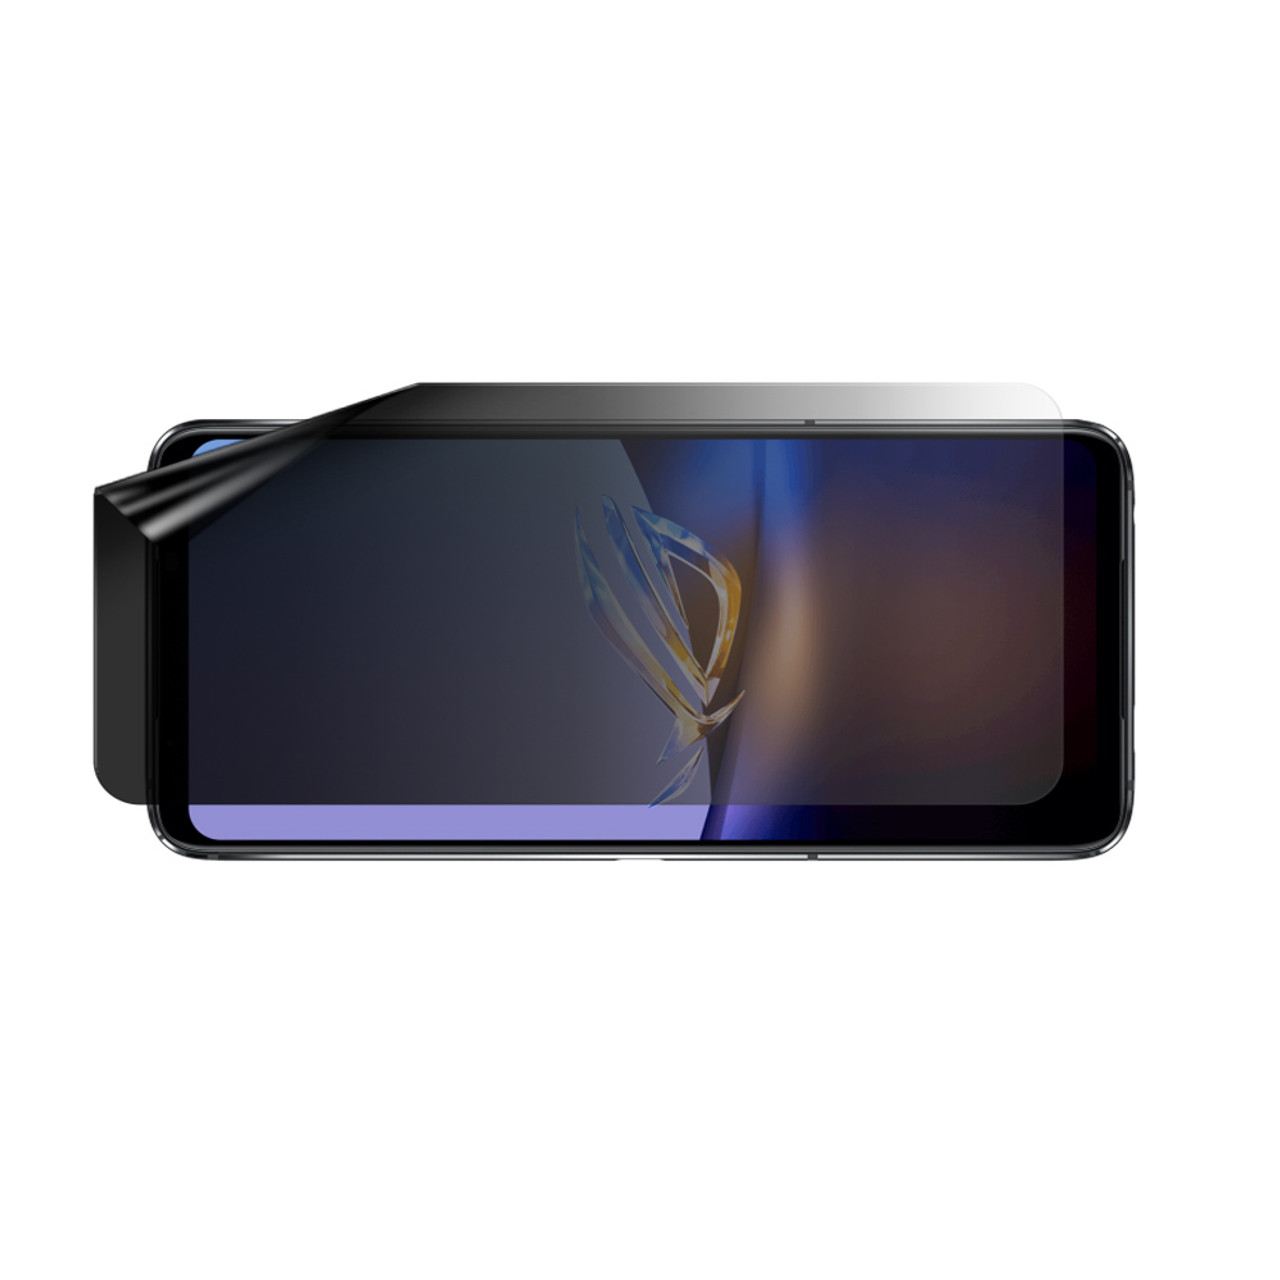 Asus ROG Phone 6D